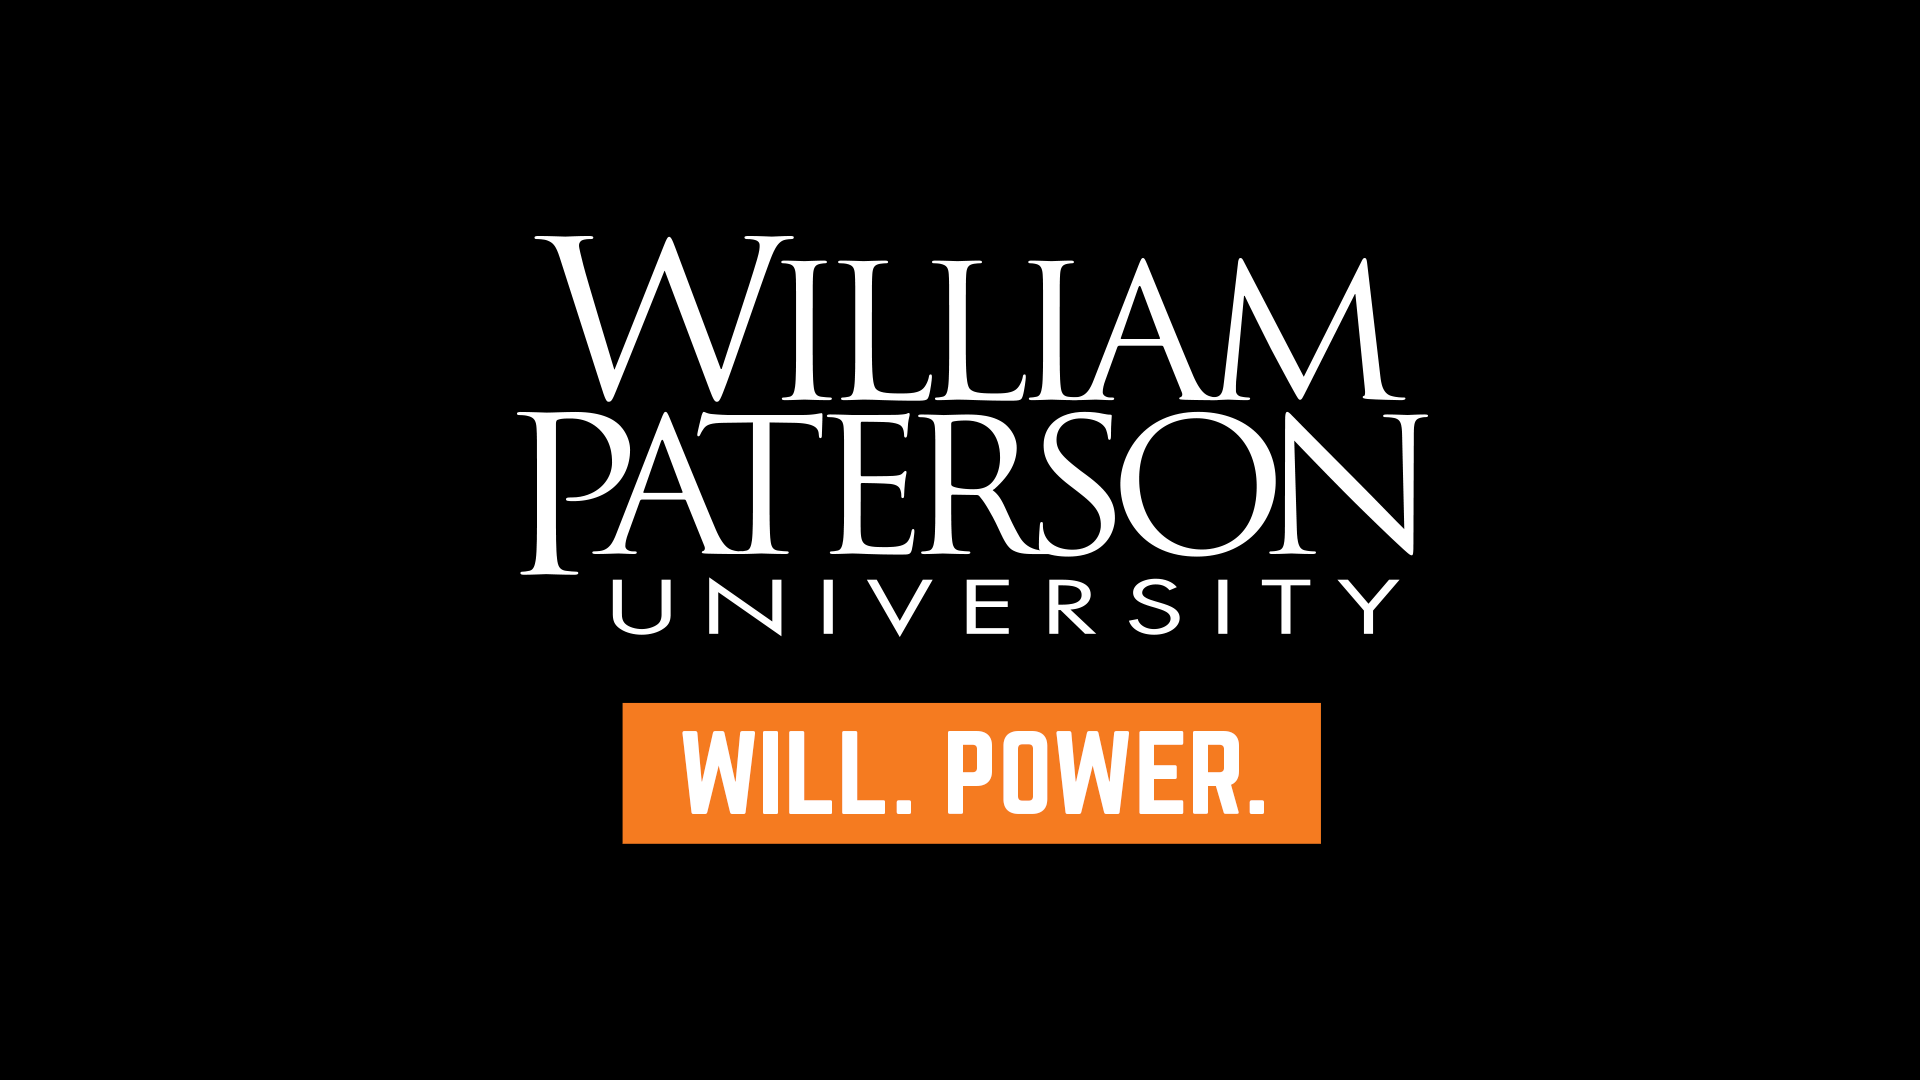 William Paterson logo and tagline.